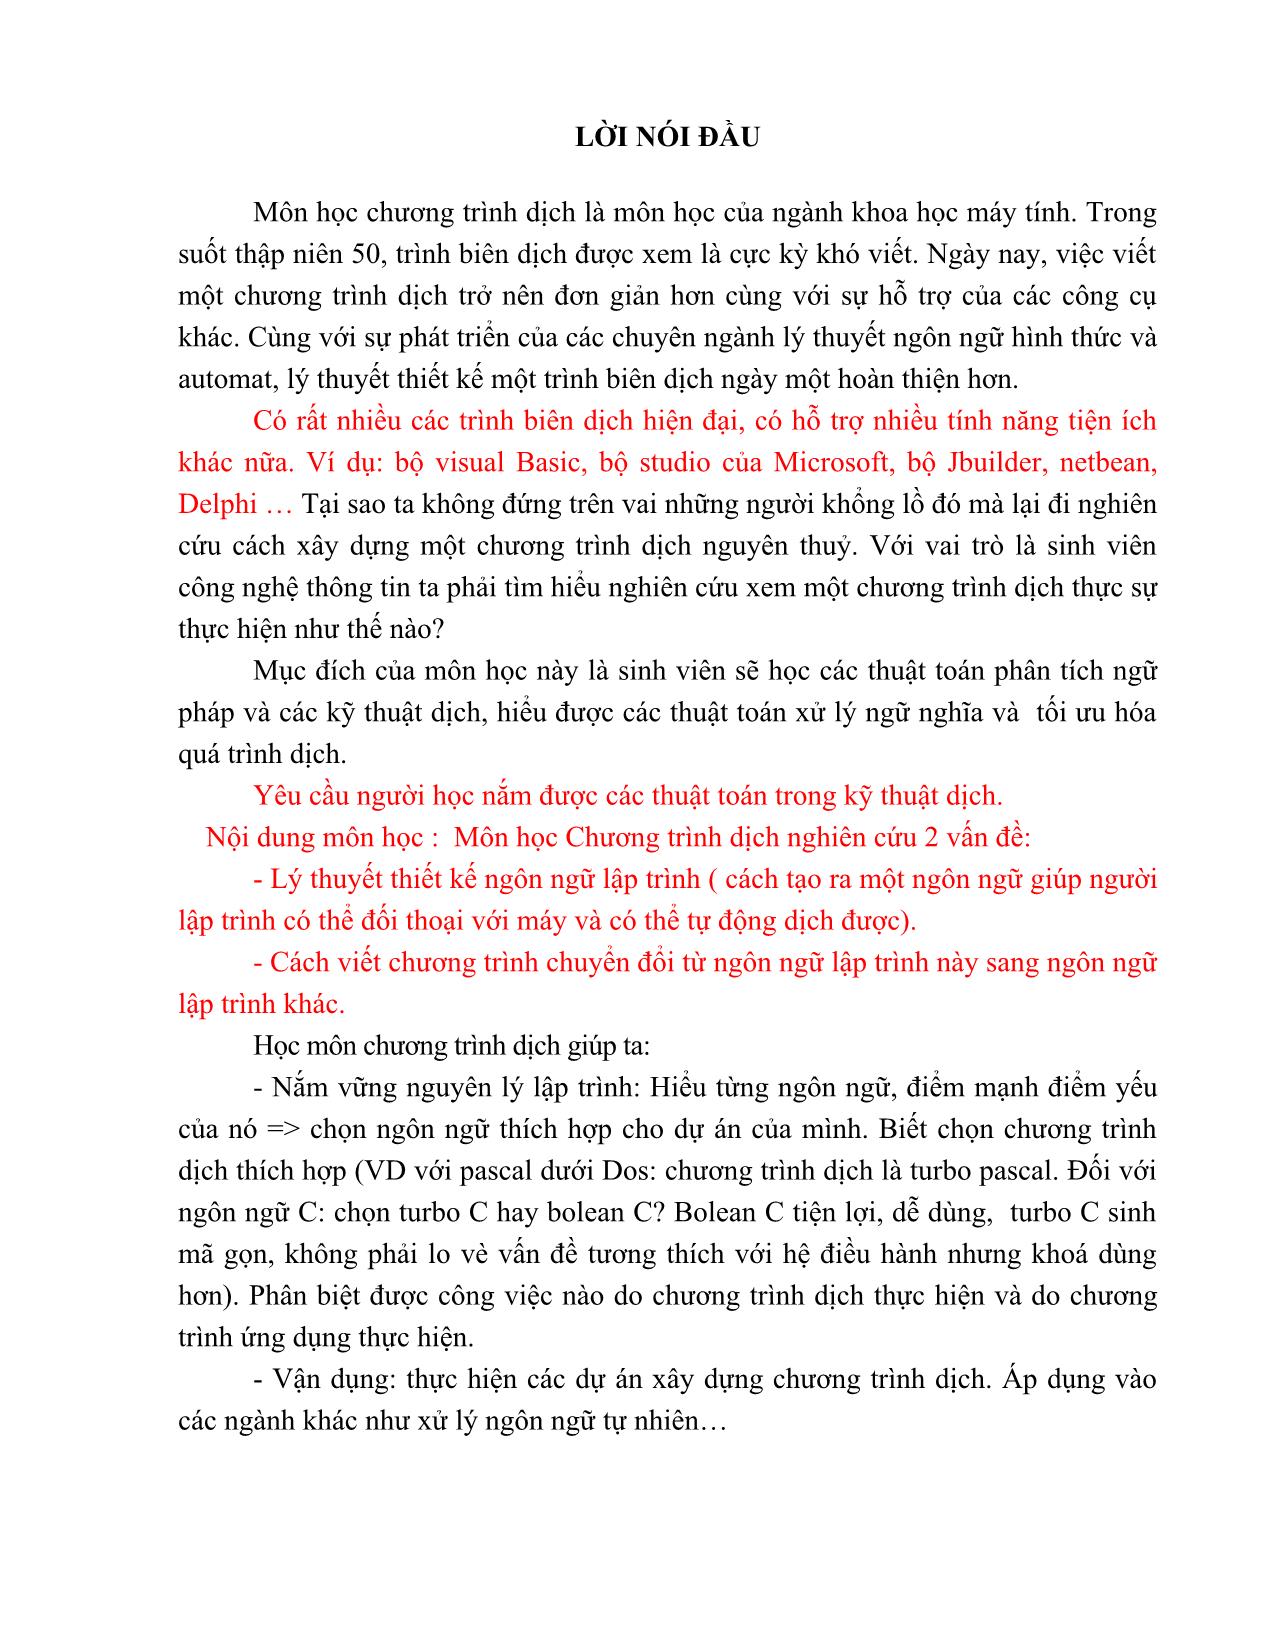 Giáo trình môn Chương trình dịch (Phần 1) trang 3